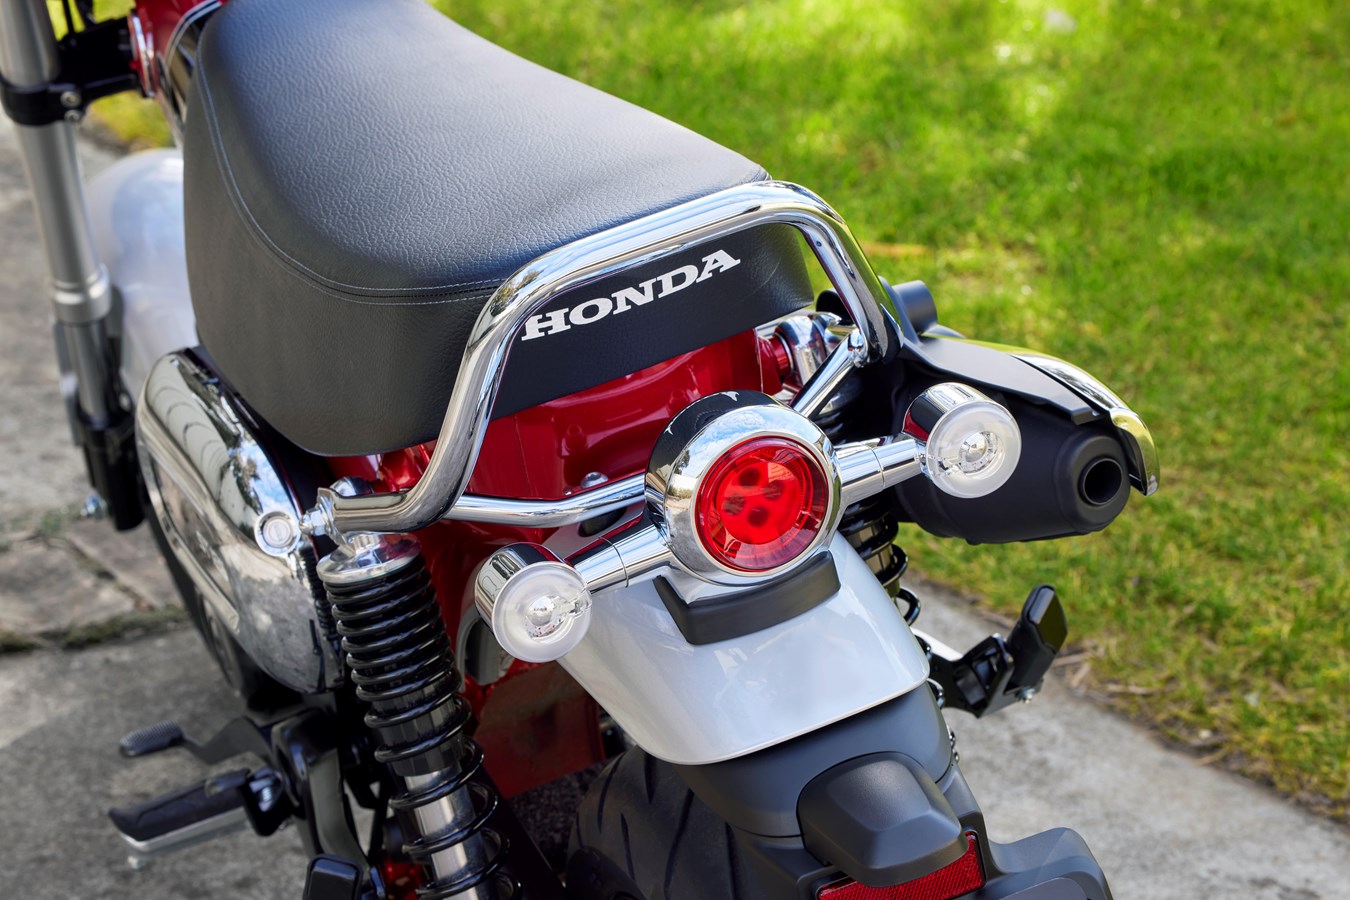 Honda ST125 Dax 2022 – Le retour du mythique Dax après 41 ans